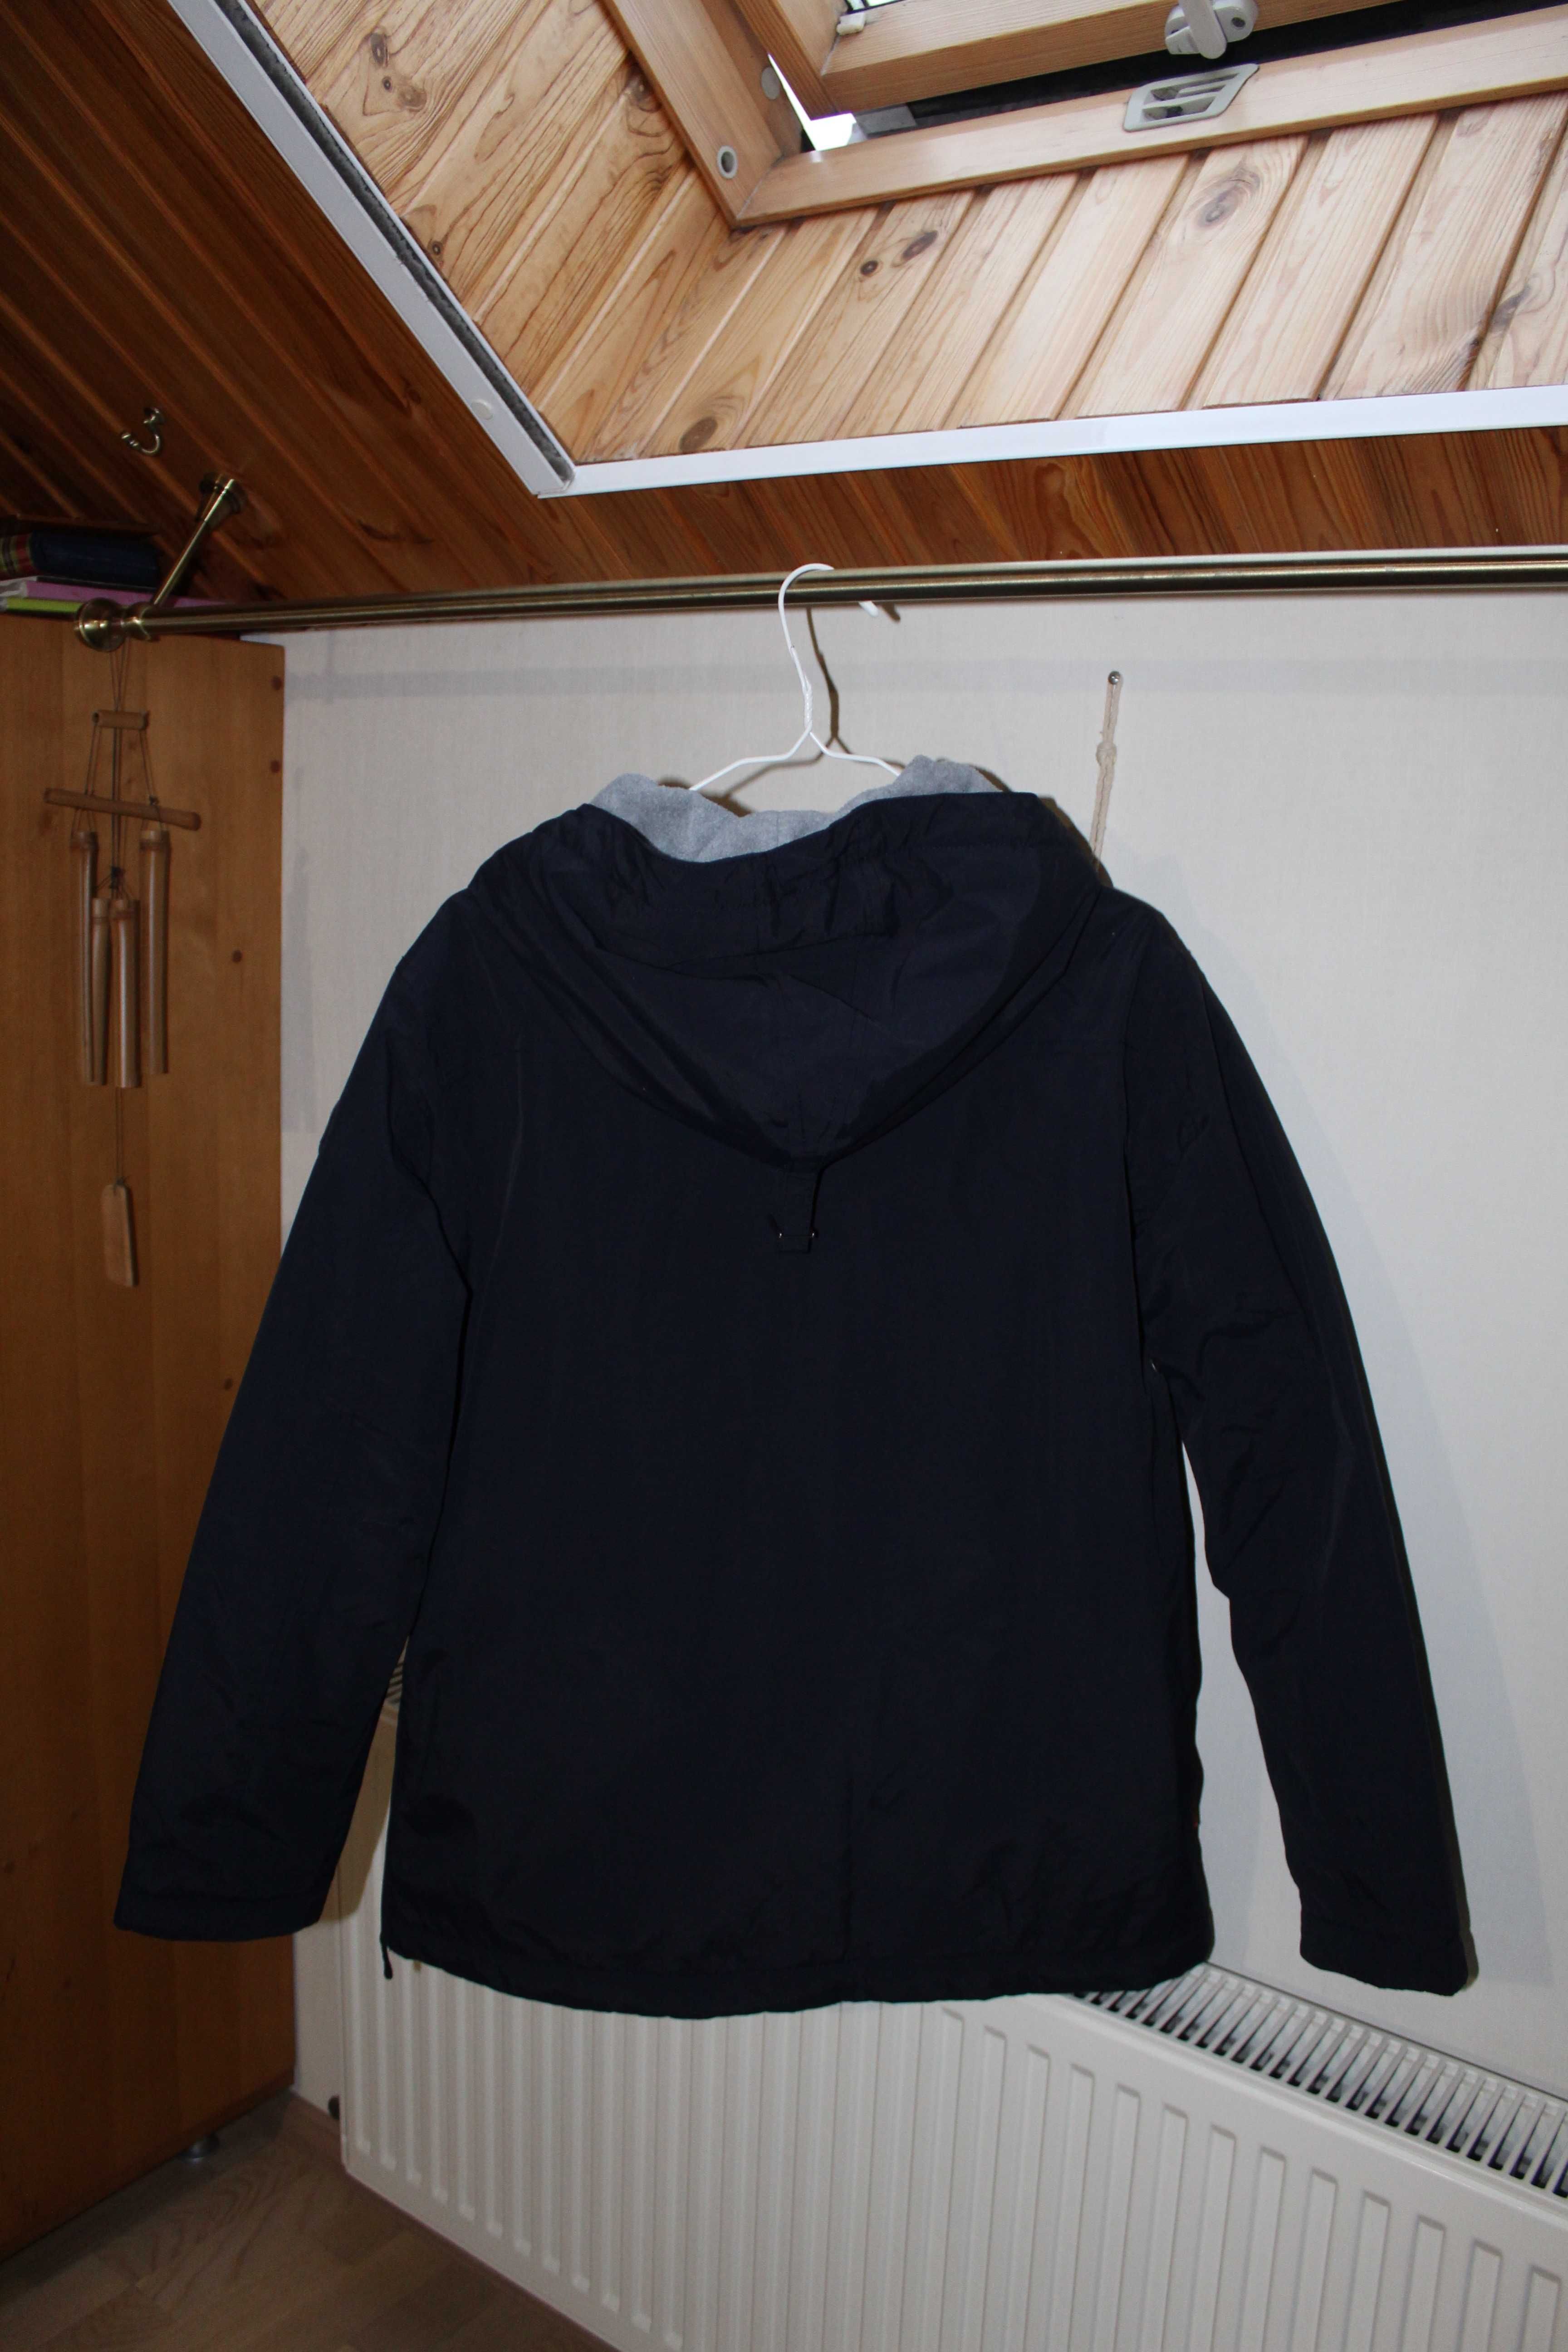 Анорак, куртка, Napapijri, Италия, р XL, на 50, новая, скидка